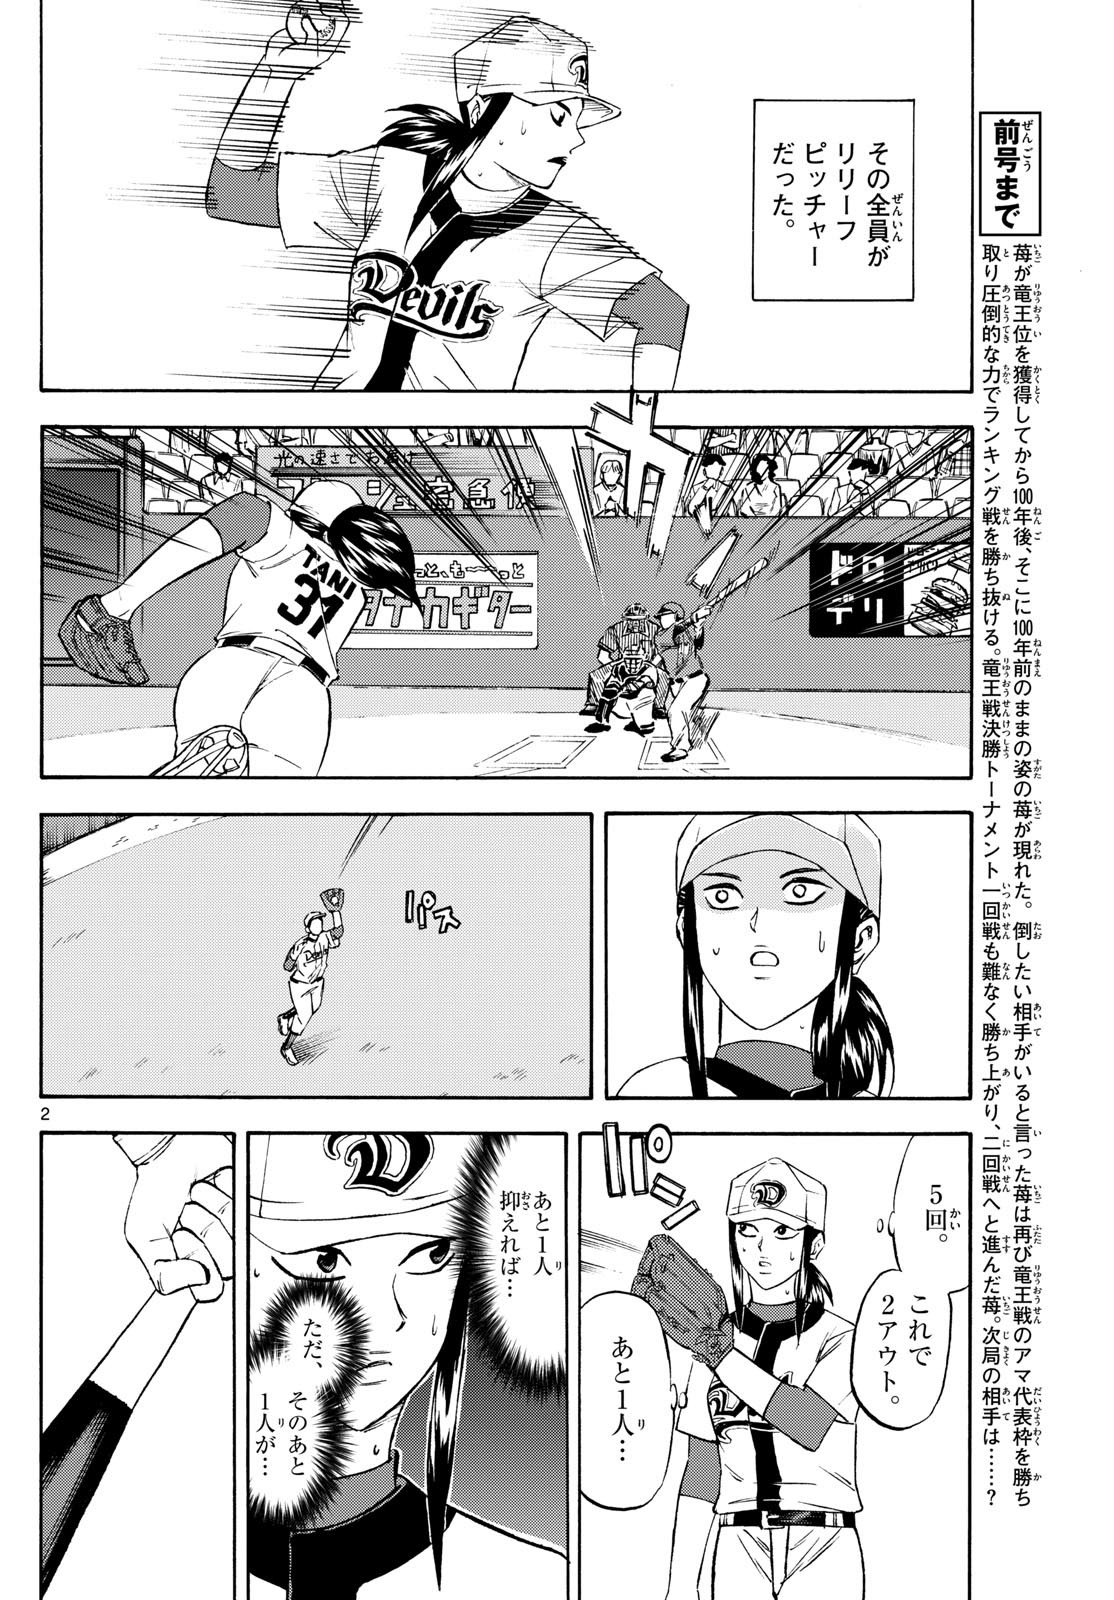 Tatsu to Ichigo - Chapter 197 - Page 2